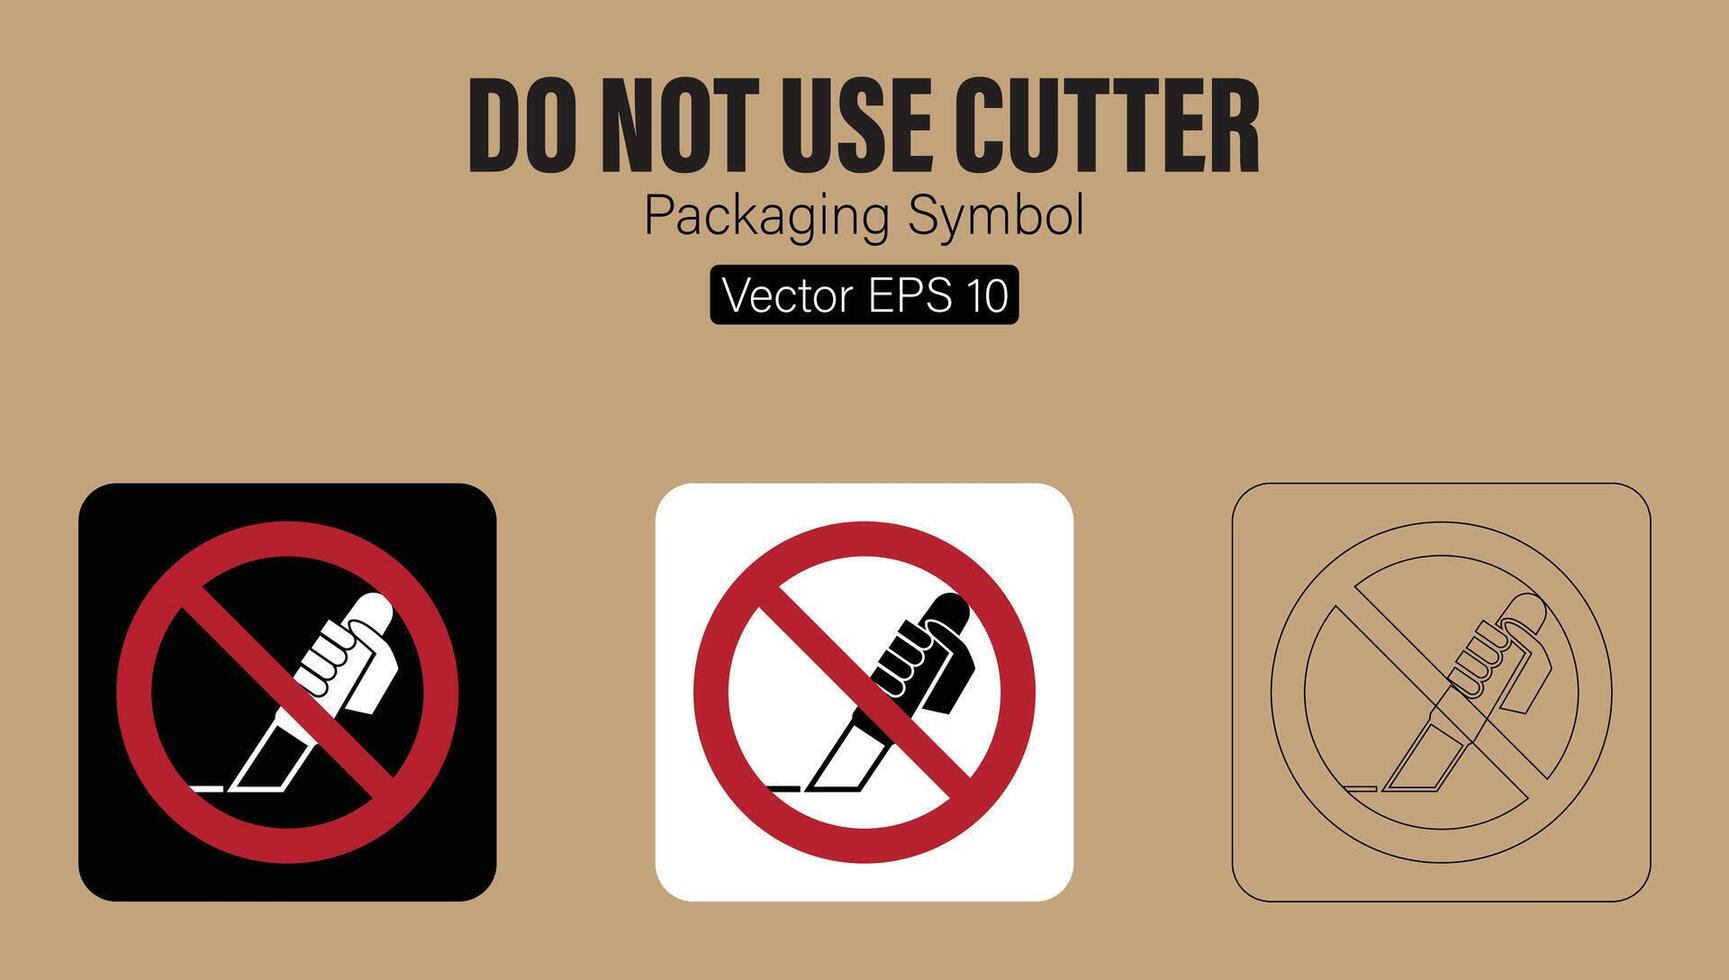 hacer no utilizar cortador cuchillo embalaje símbolo vector